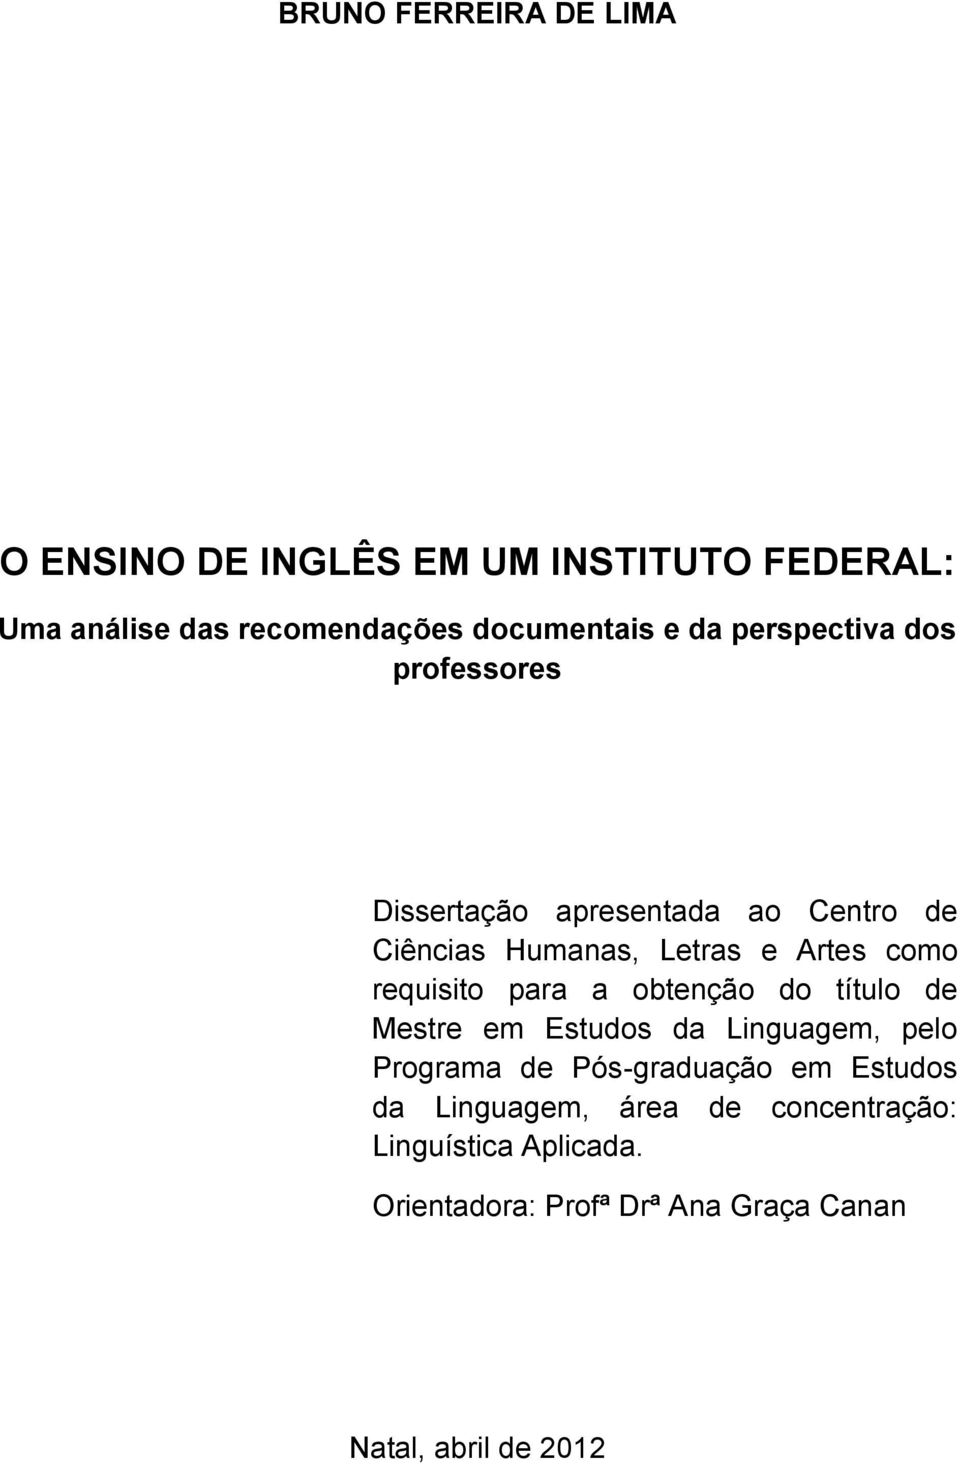 requisito para a obtenção do título de Mestre em Estudos da Linguagem, pelo Programa de Pós-graduação em